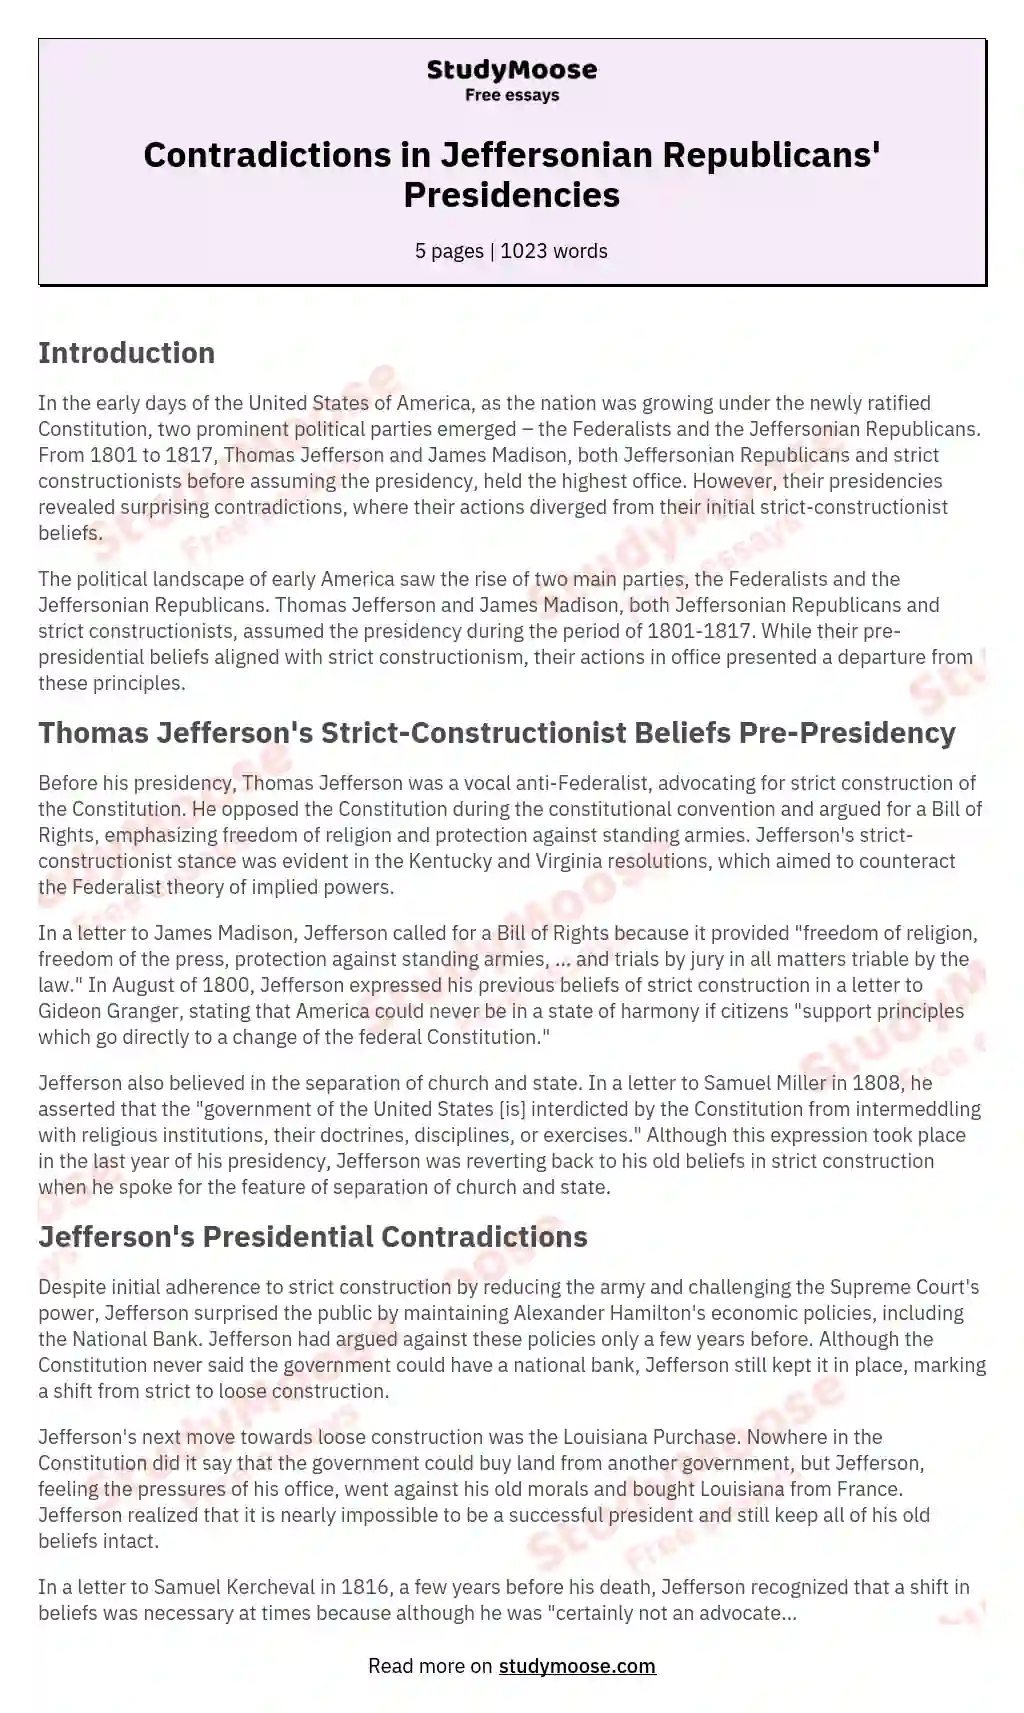 Contradictions in Jeffersonian Republicans' Presidencies essay